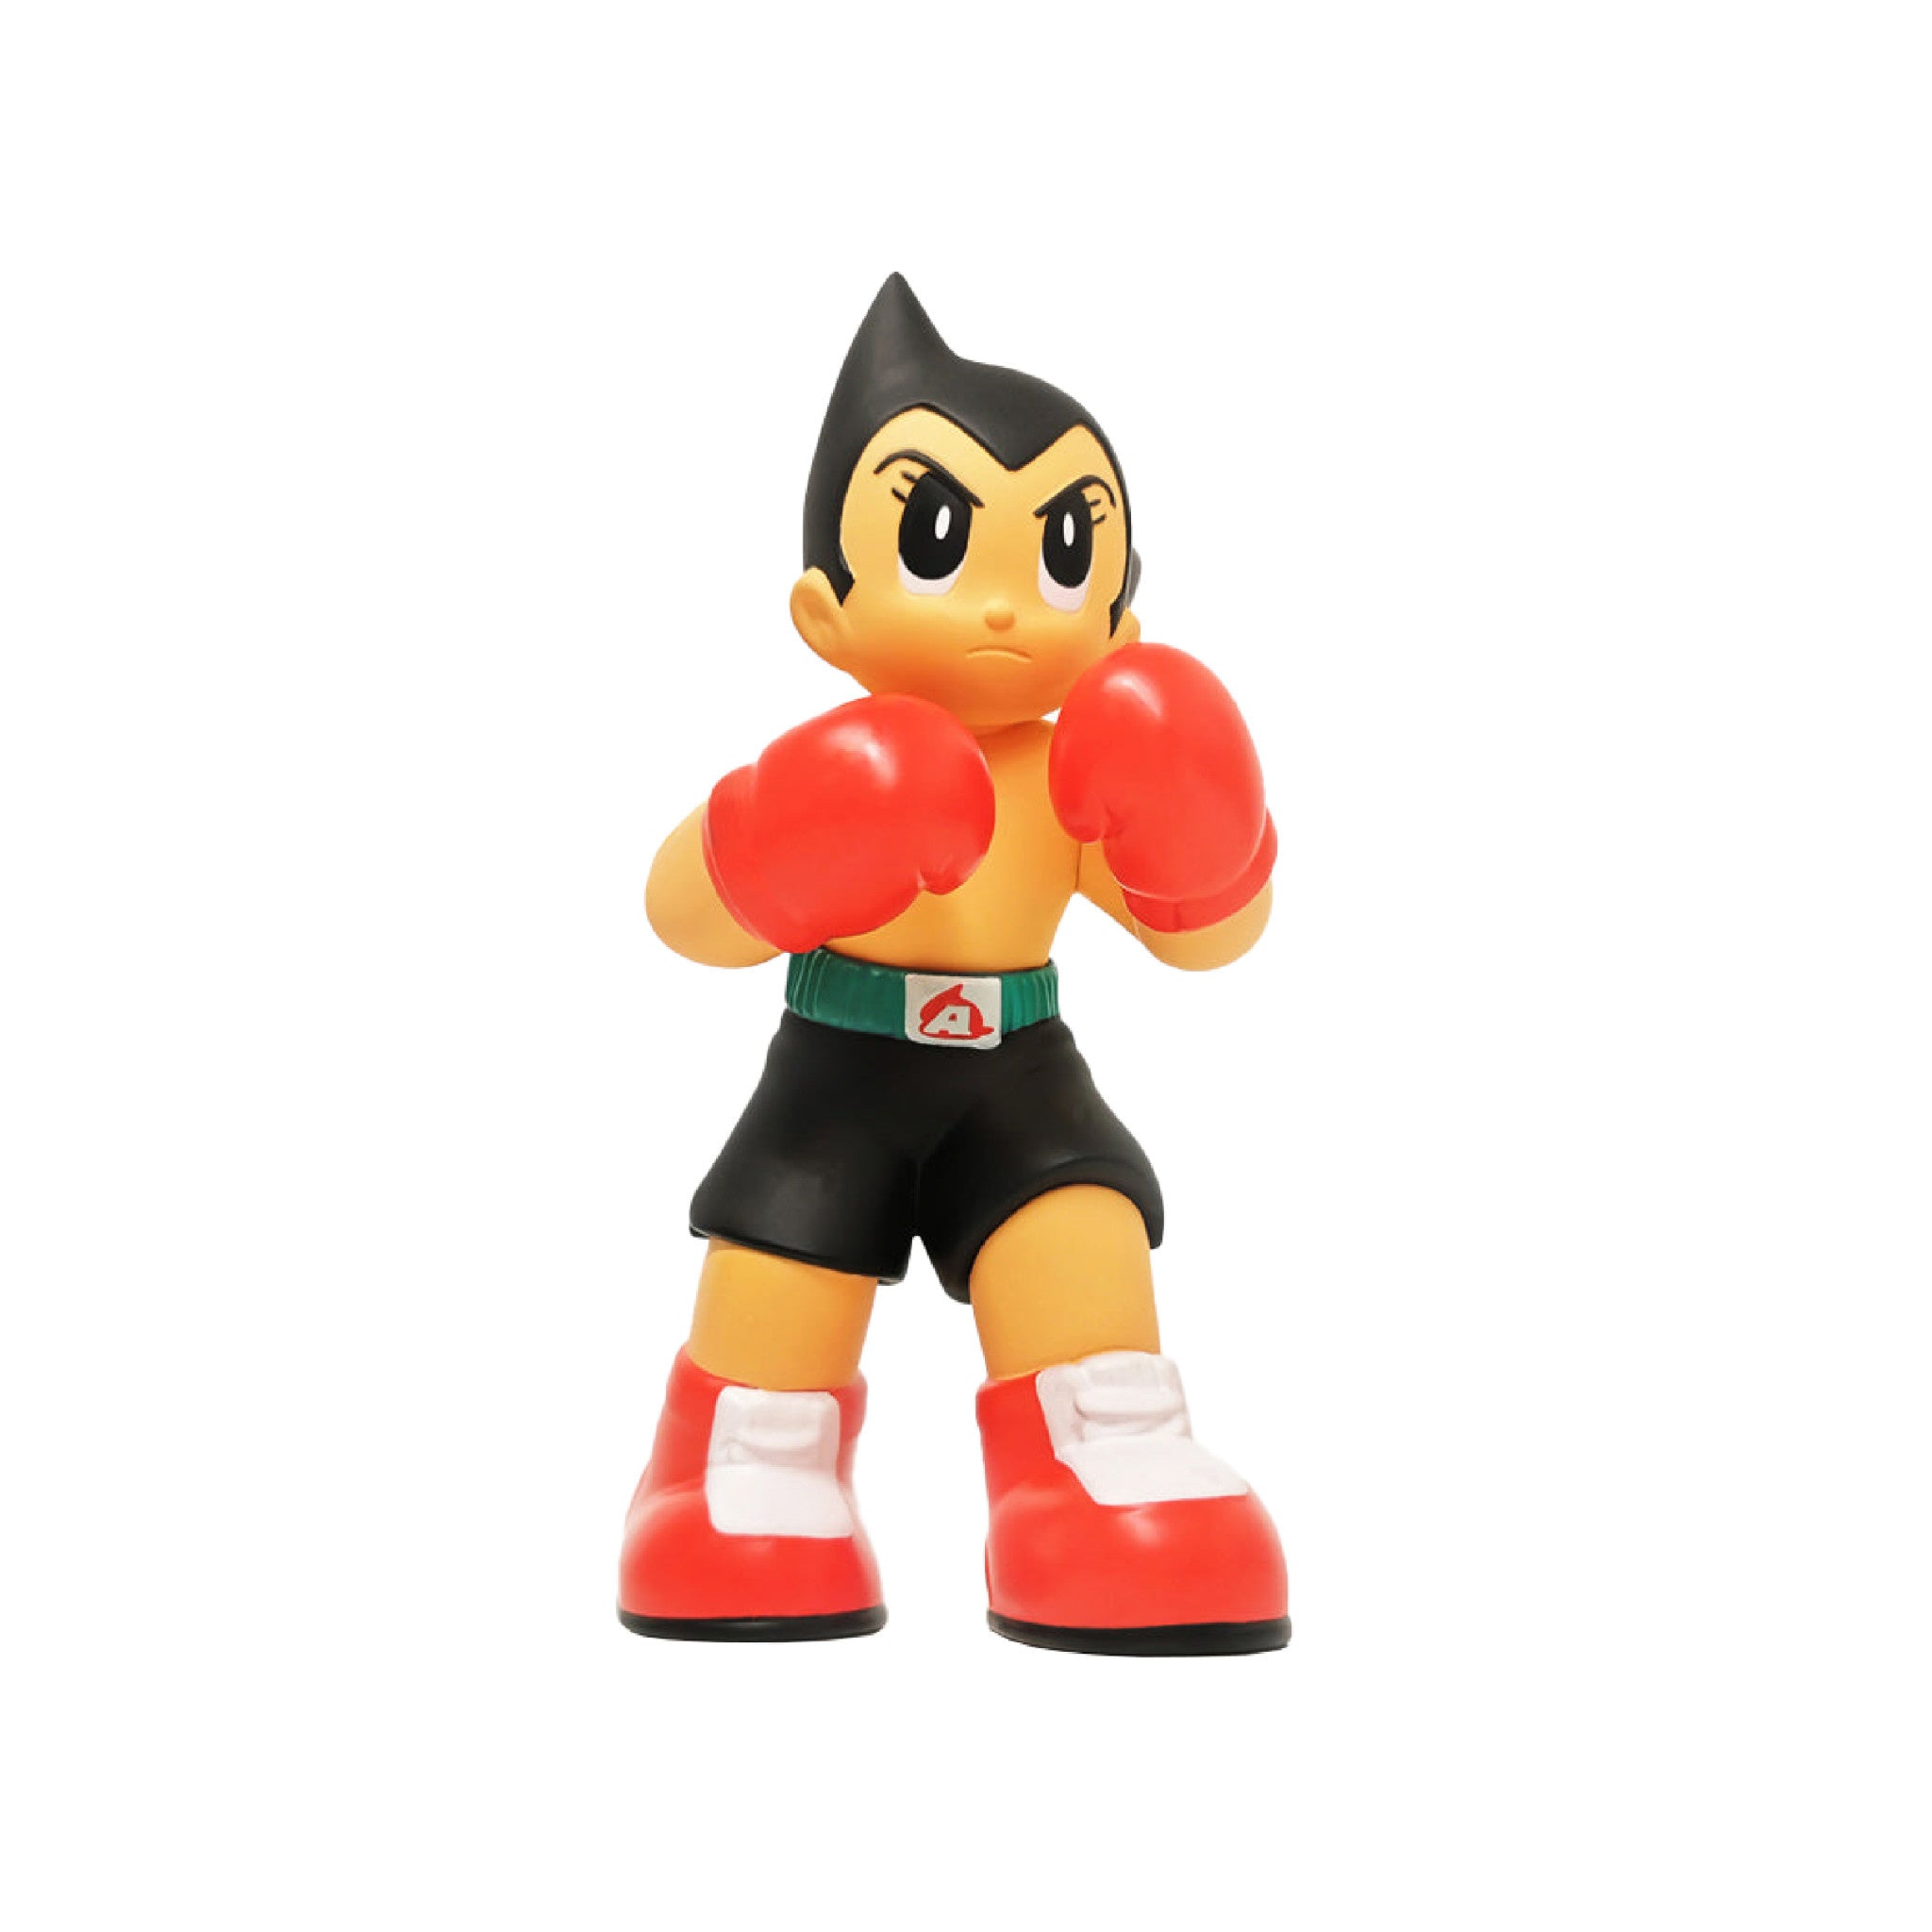 Astro Boy Boxer - OG 6 inch - Wynwood Walls Shop